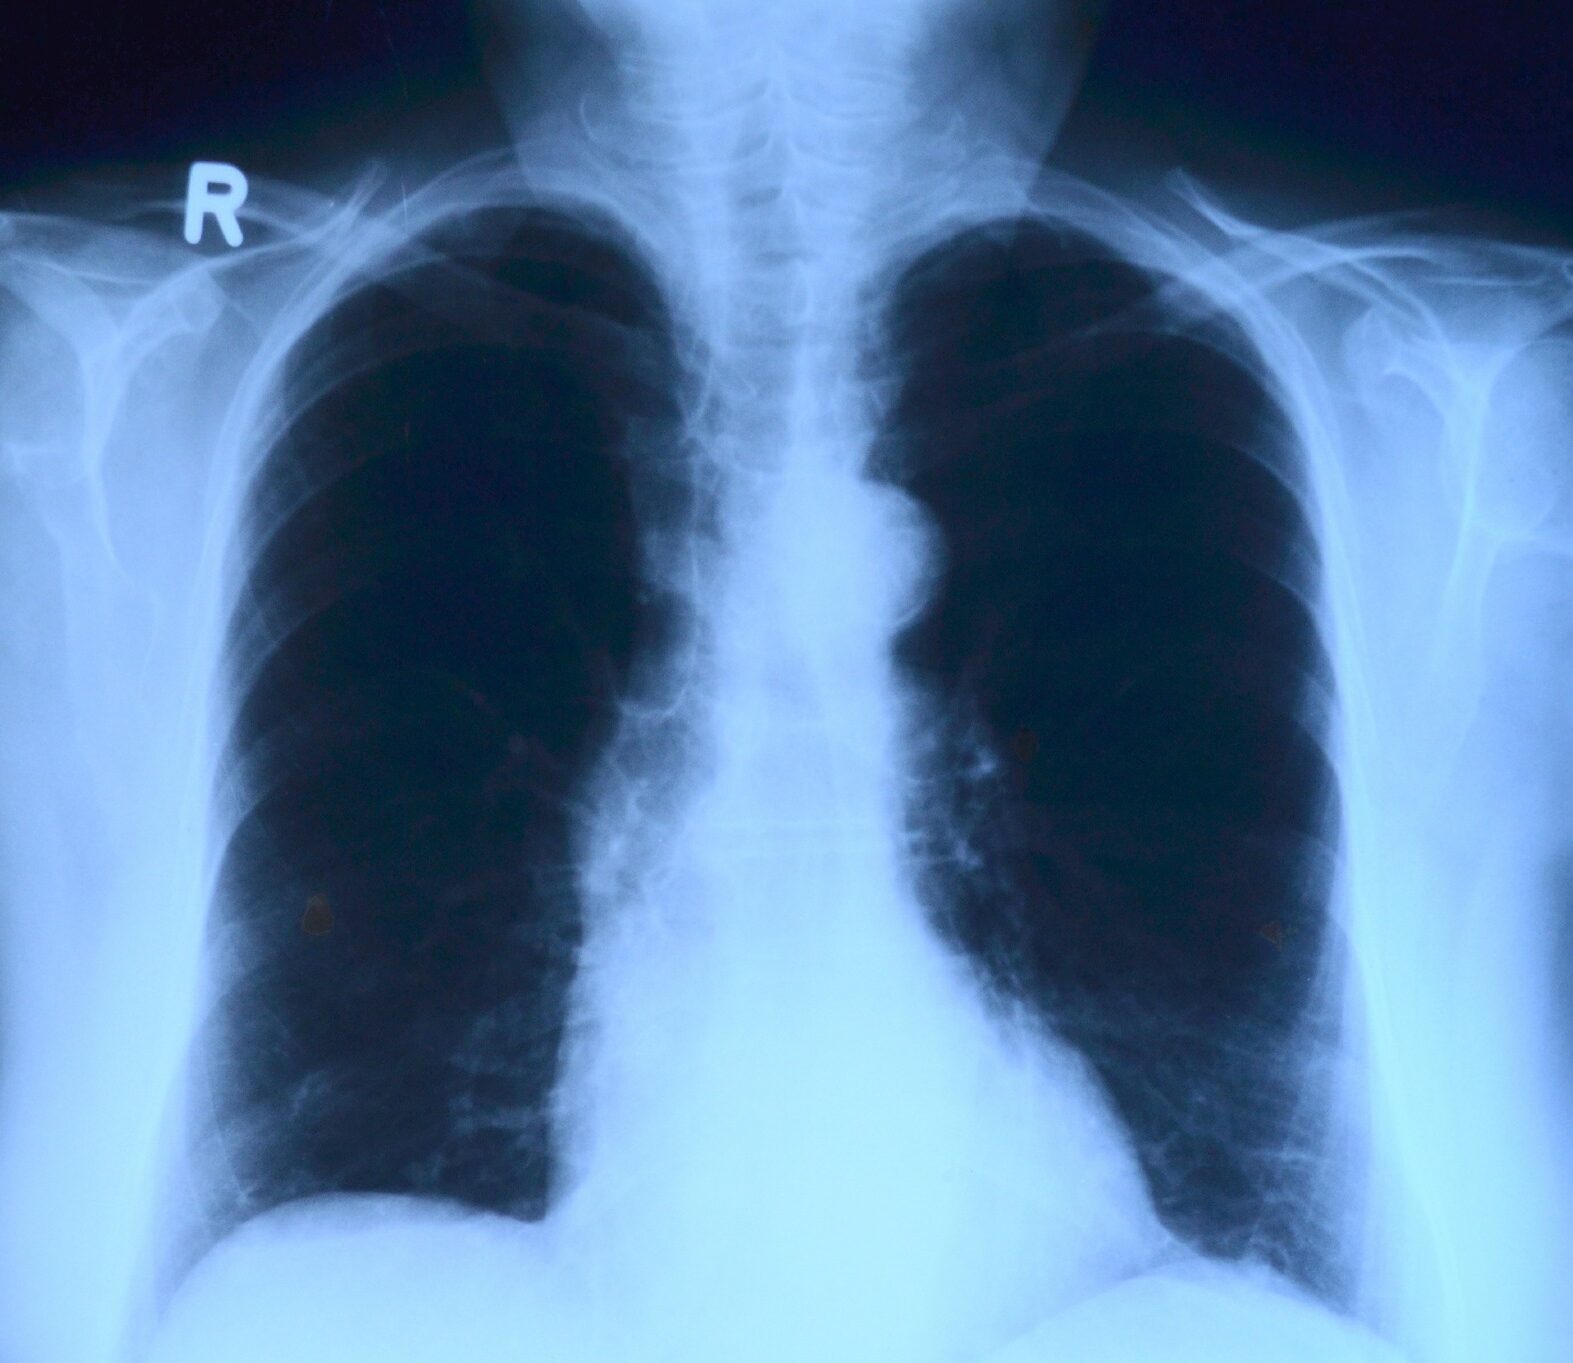 Radiografie a domicilio, l’esperienza di San Raffaele e Medicilio